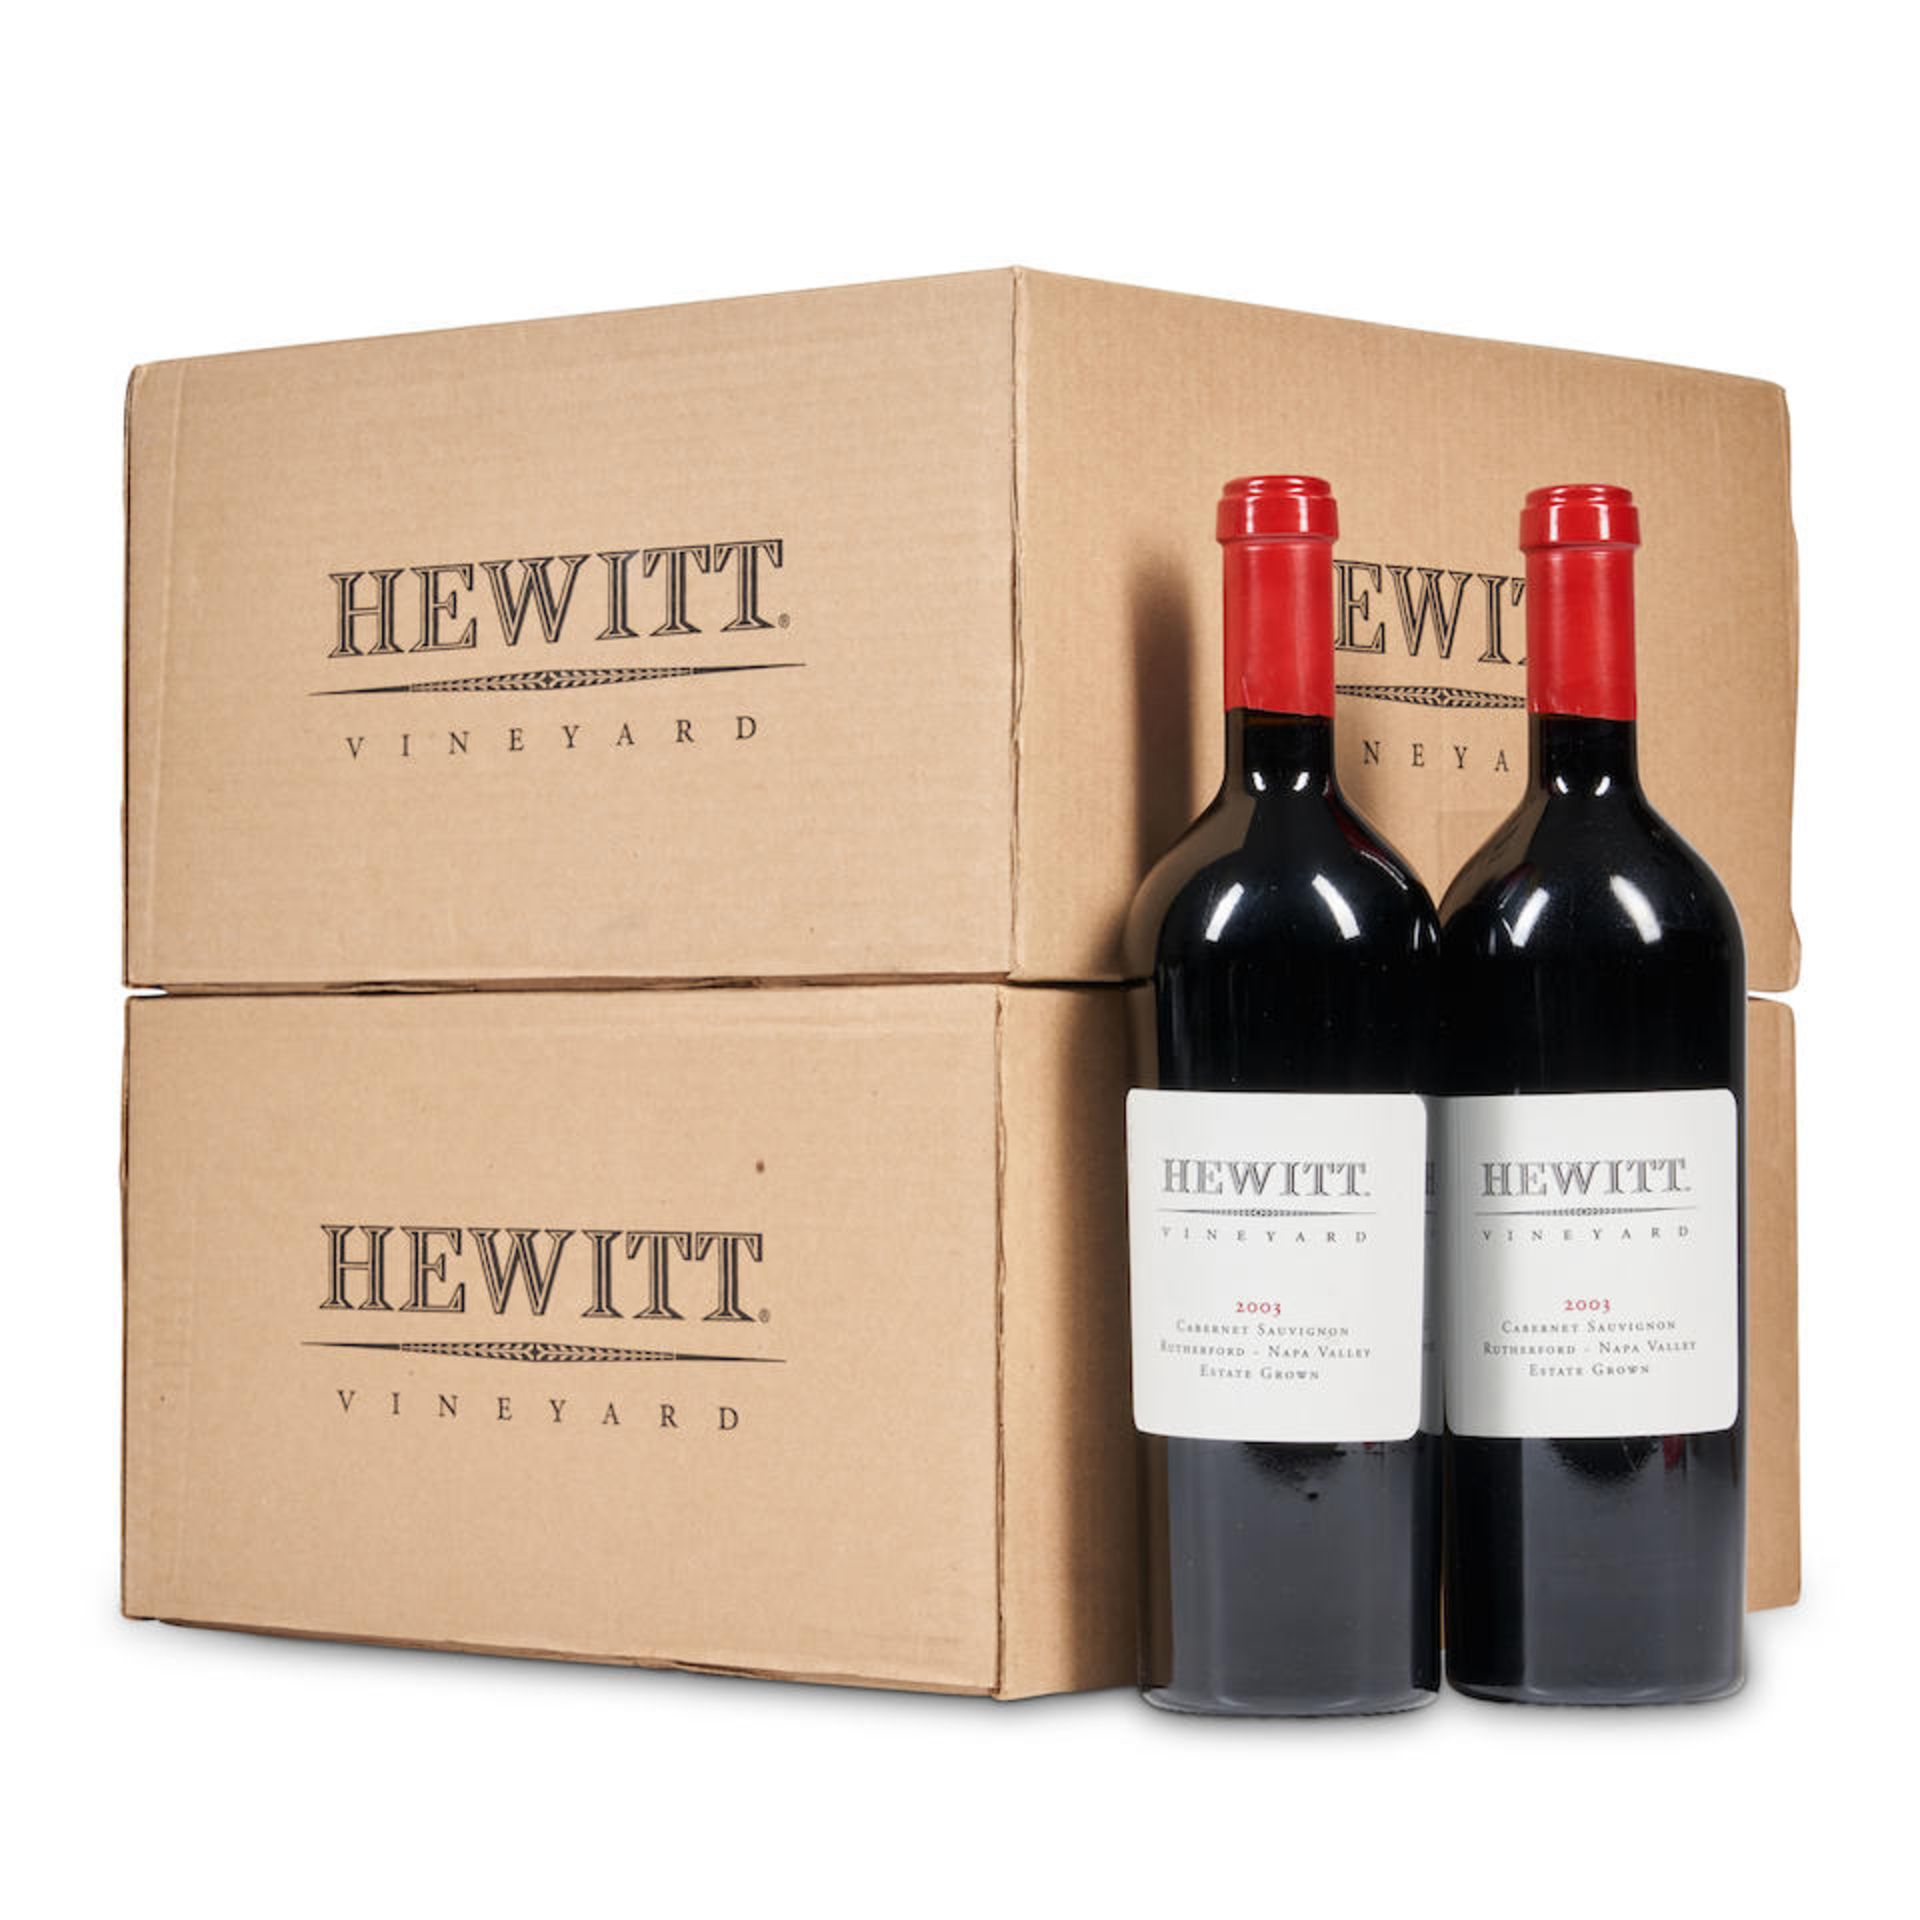 Hewitt Cabernet Sauvignon 2003 (12 bottles)